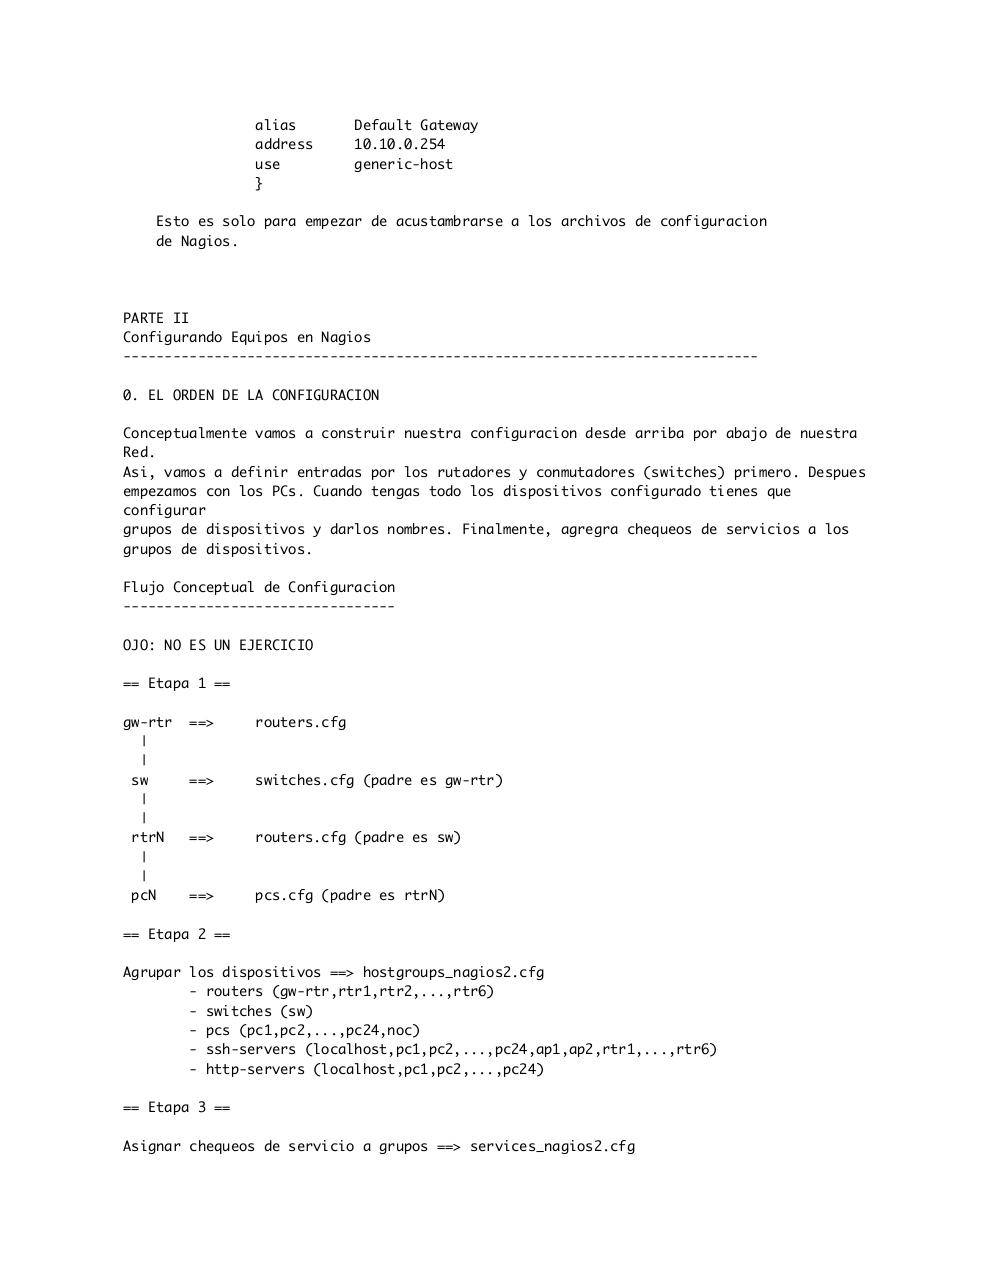 Vista previa del archivo PDF ejercicios-nagios.pdf